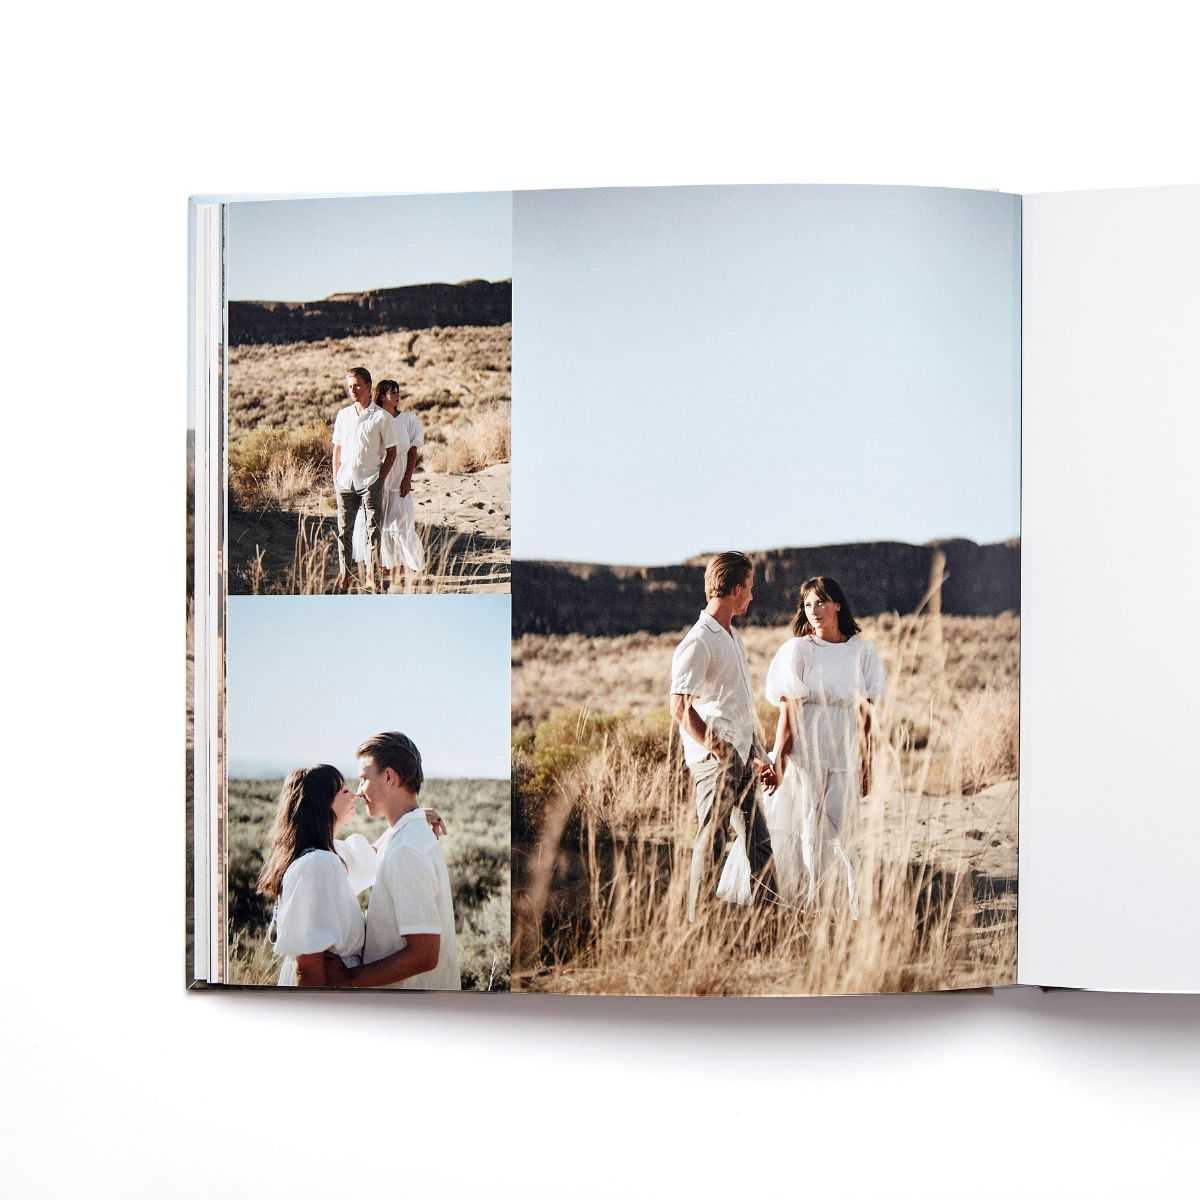 Desert wedding photos on a book